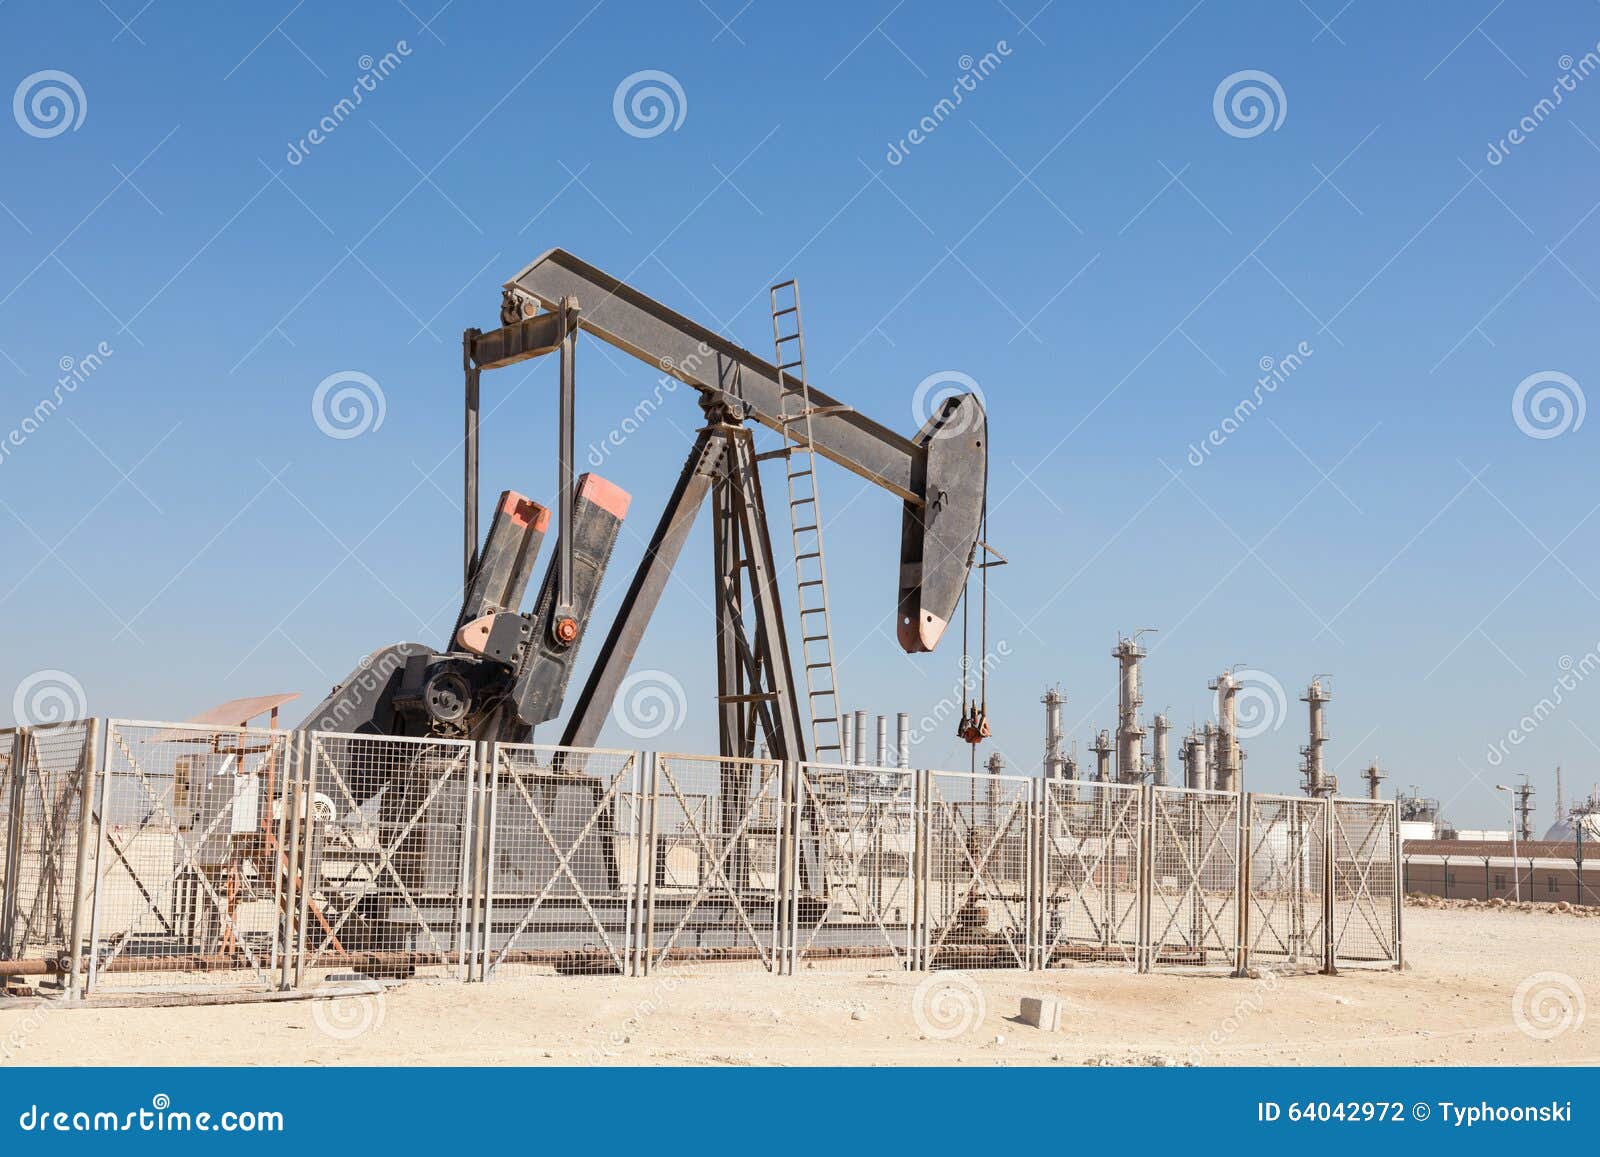 Öl-Pumpe in der Wüste stockfoto. Bild von erdöl, maschinerie - 64042972